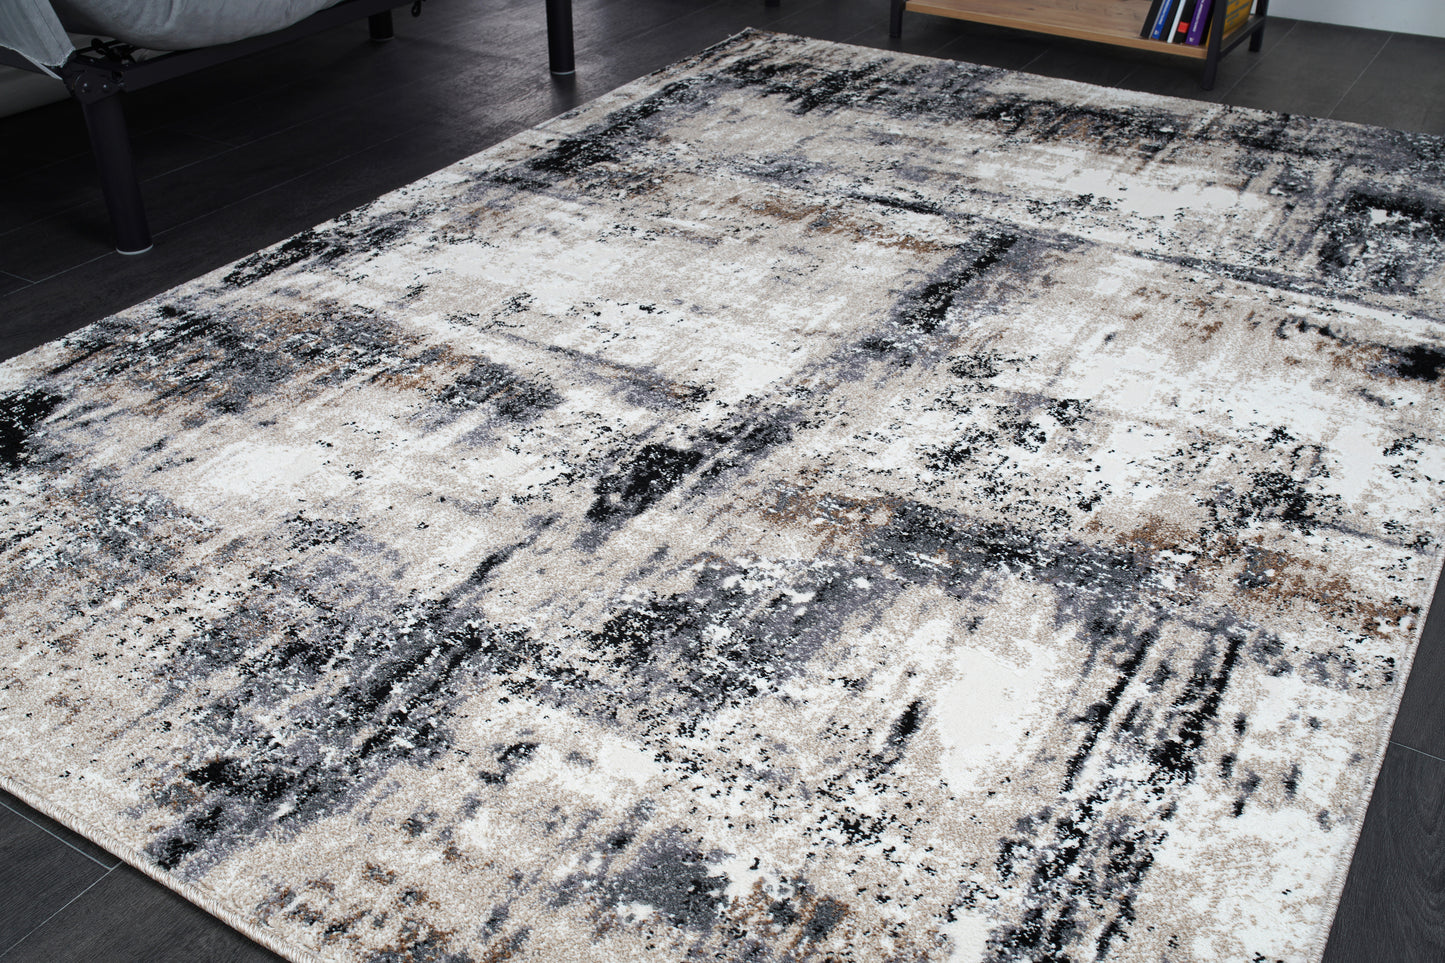 everest black grey beige modern rustic design area rug 8x10, 8x11 ft Large Living Room Carpet, Bedroom, Kitchen